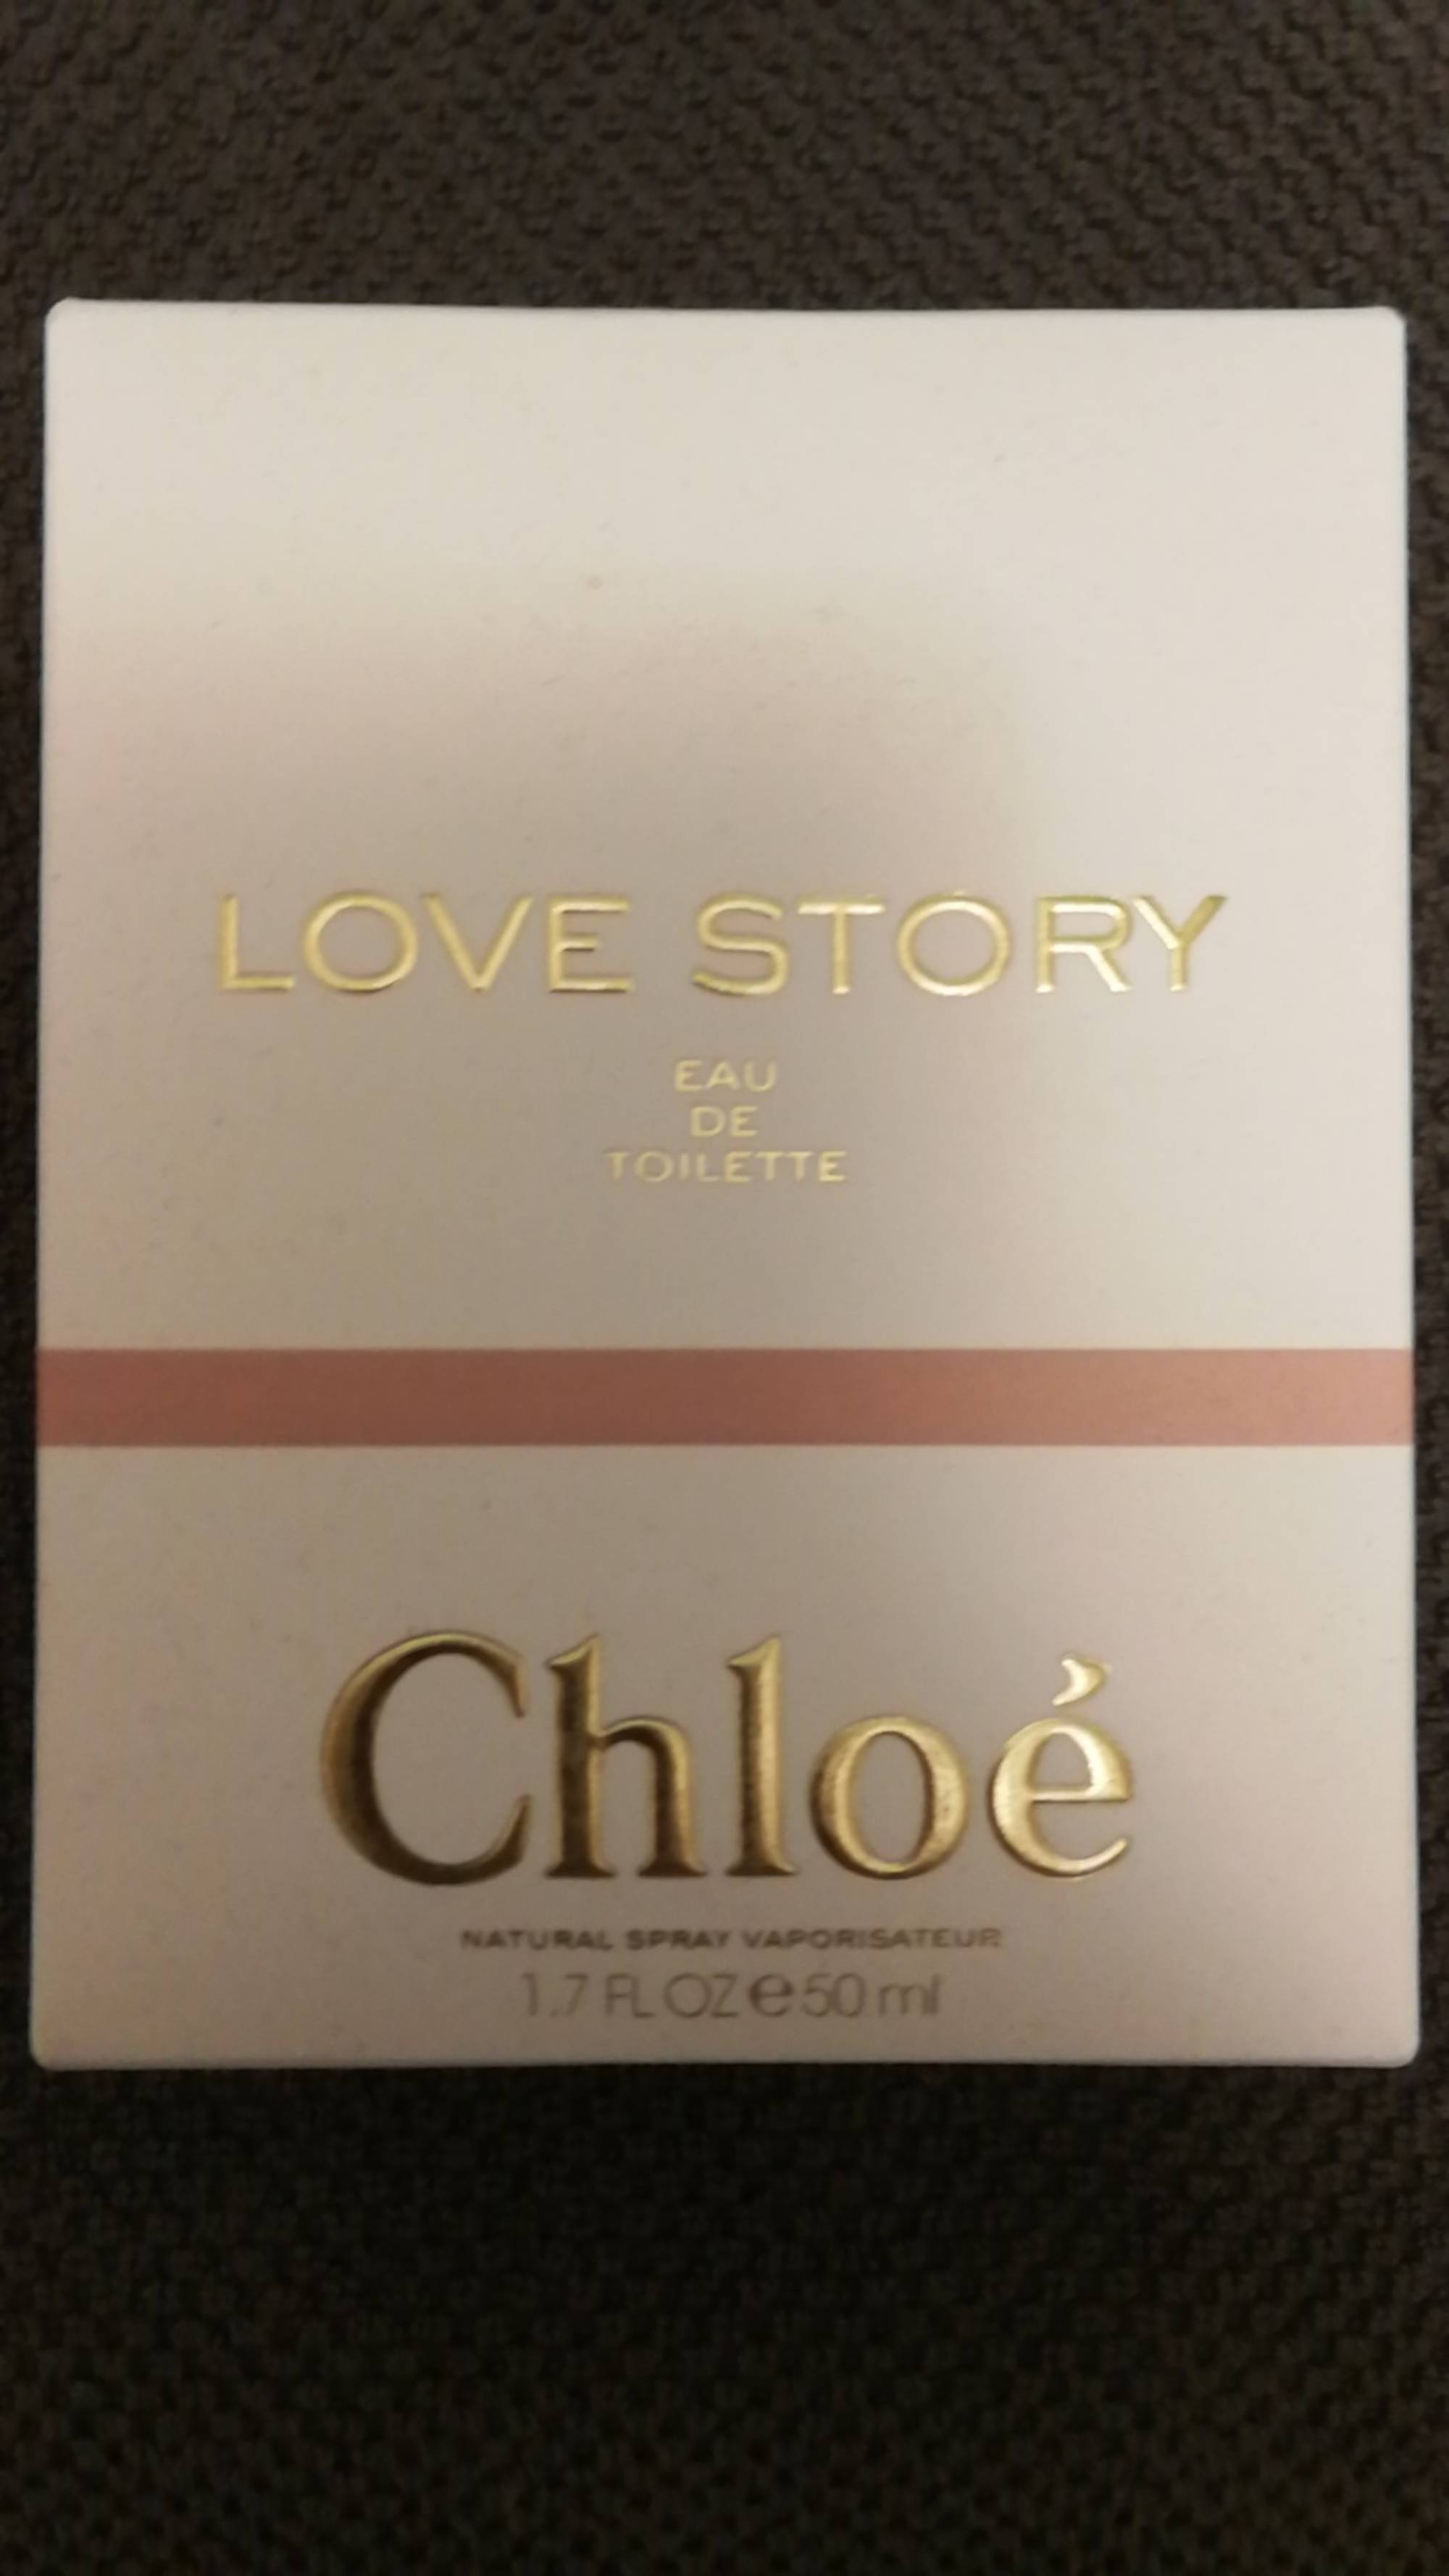 CHLOÉ - Love story - Eau de toilette